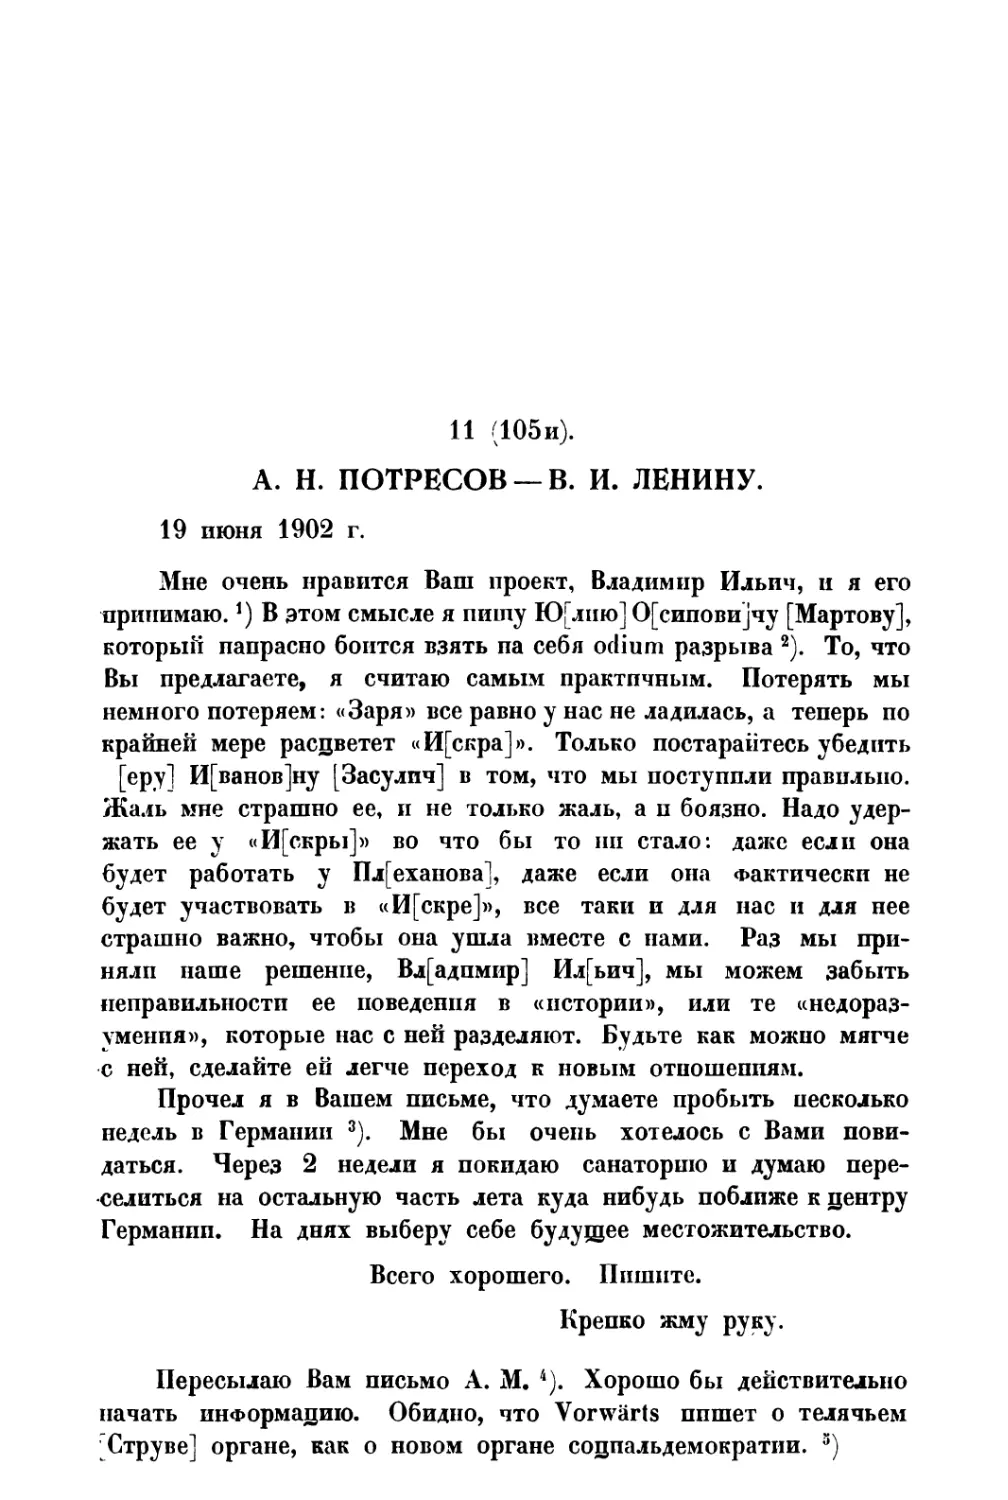 11. А. Н. Потресов — В. И. Ленину от 19 VI 1902 г